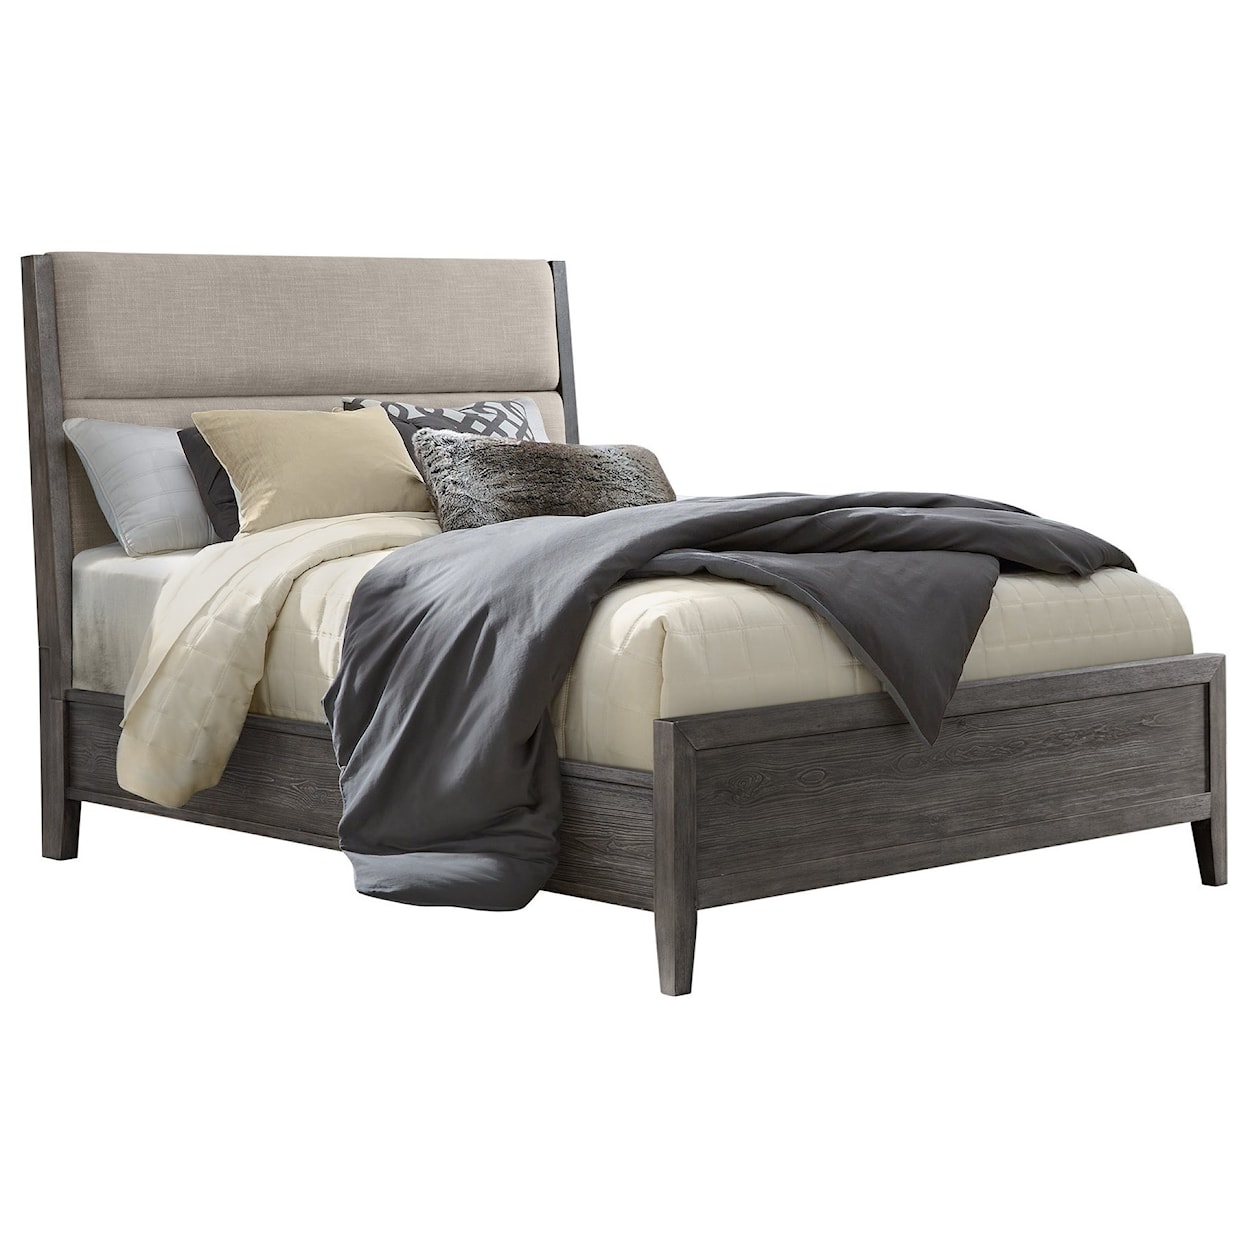 Intercon Portia Queen Upholstered Bed